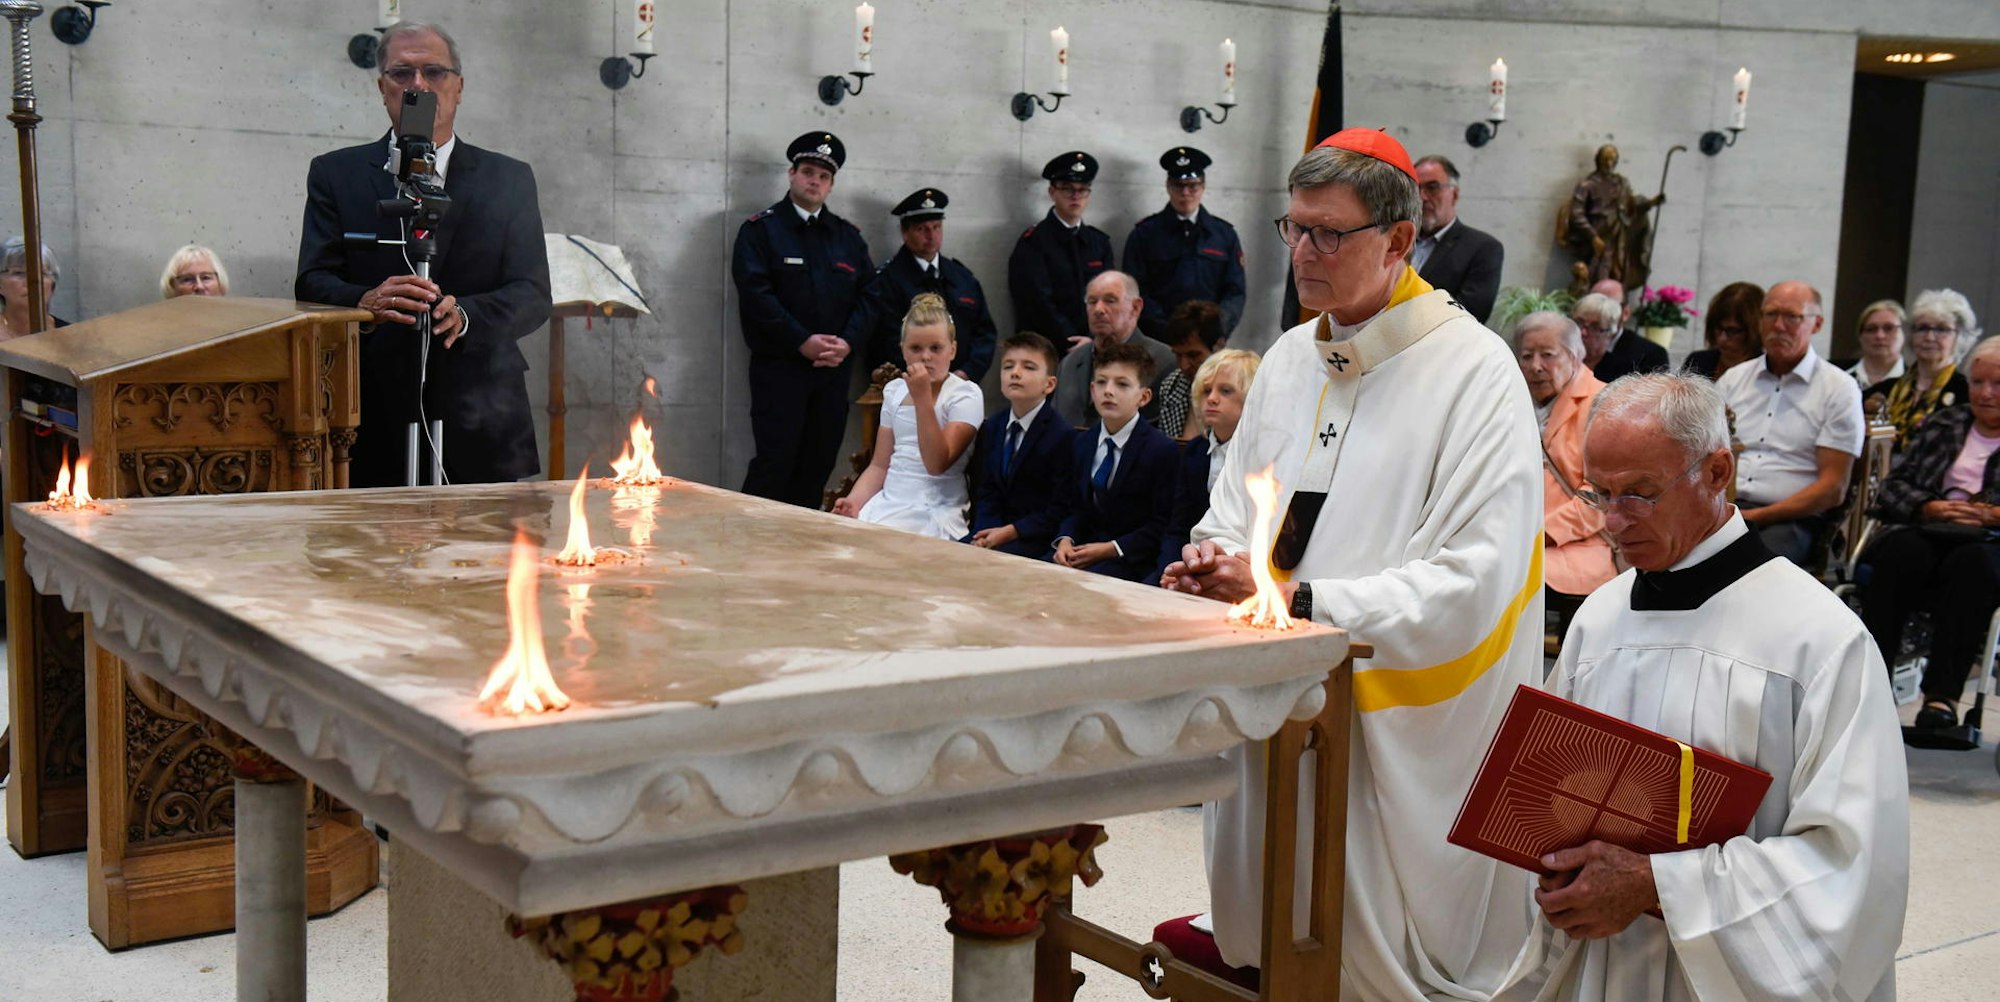 Bei der Altarweihe entzündete Woelki fünf Feuer.